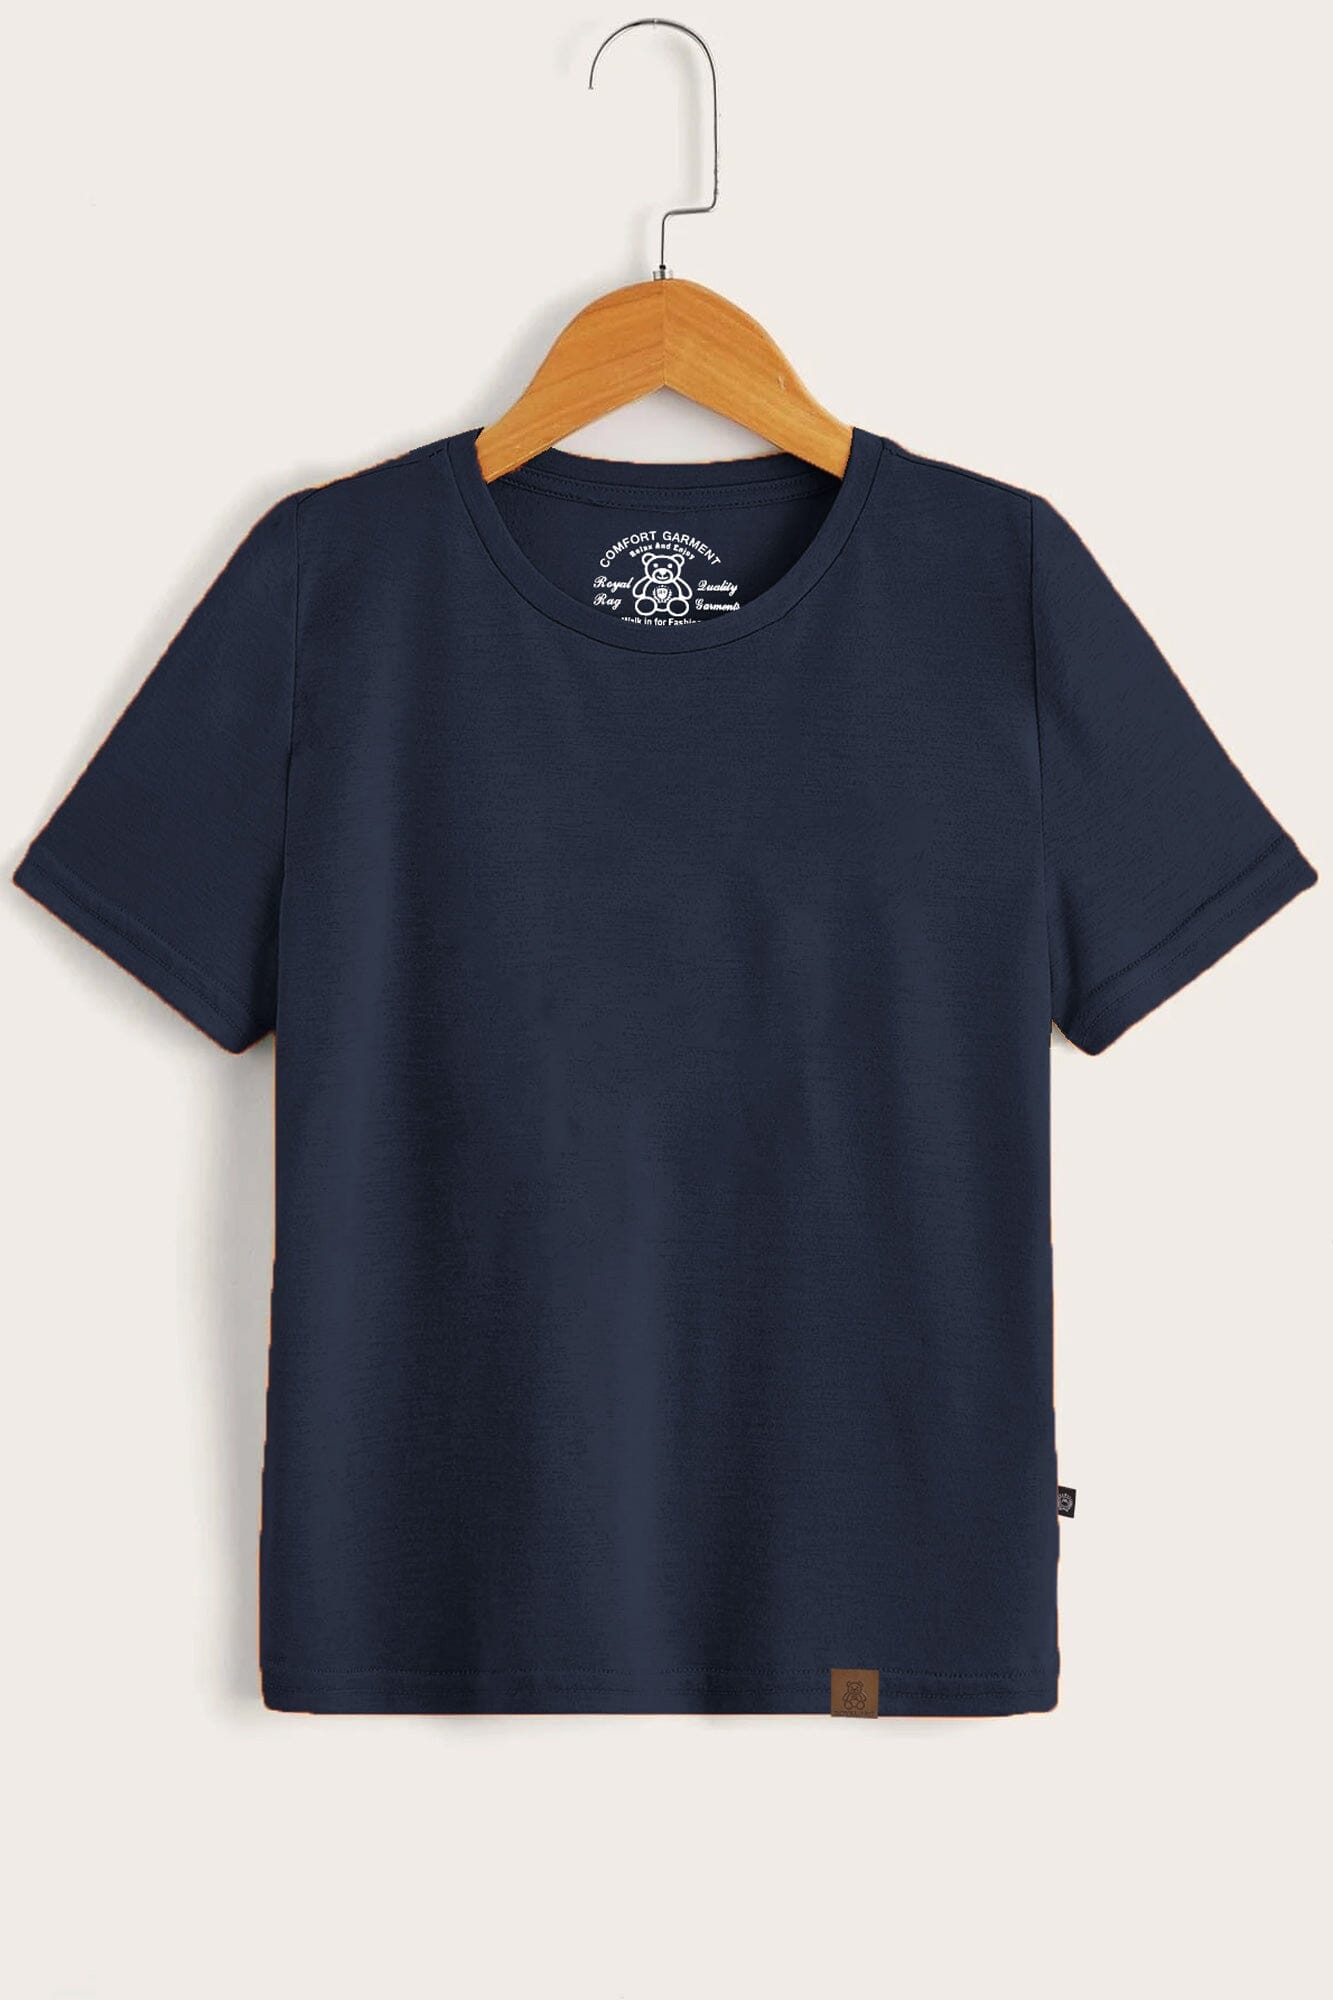 RR Comfort Kid's Solid Design Short Sleeve Tee Shirt Boy's Tee Shirt Usman Traders Navy 2-3 Years 